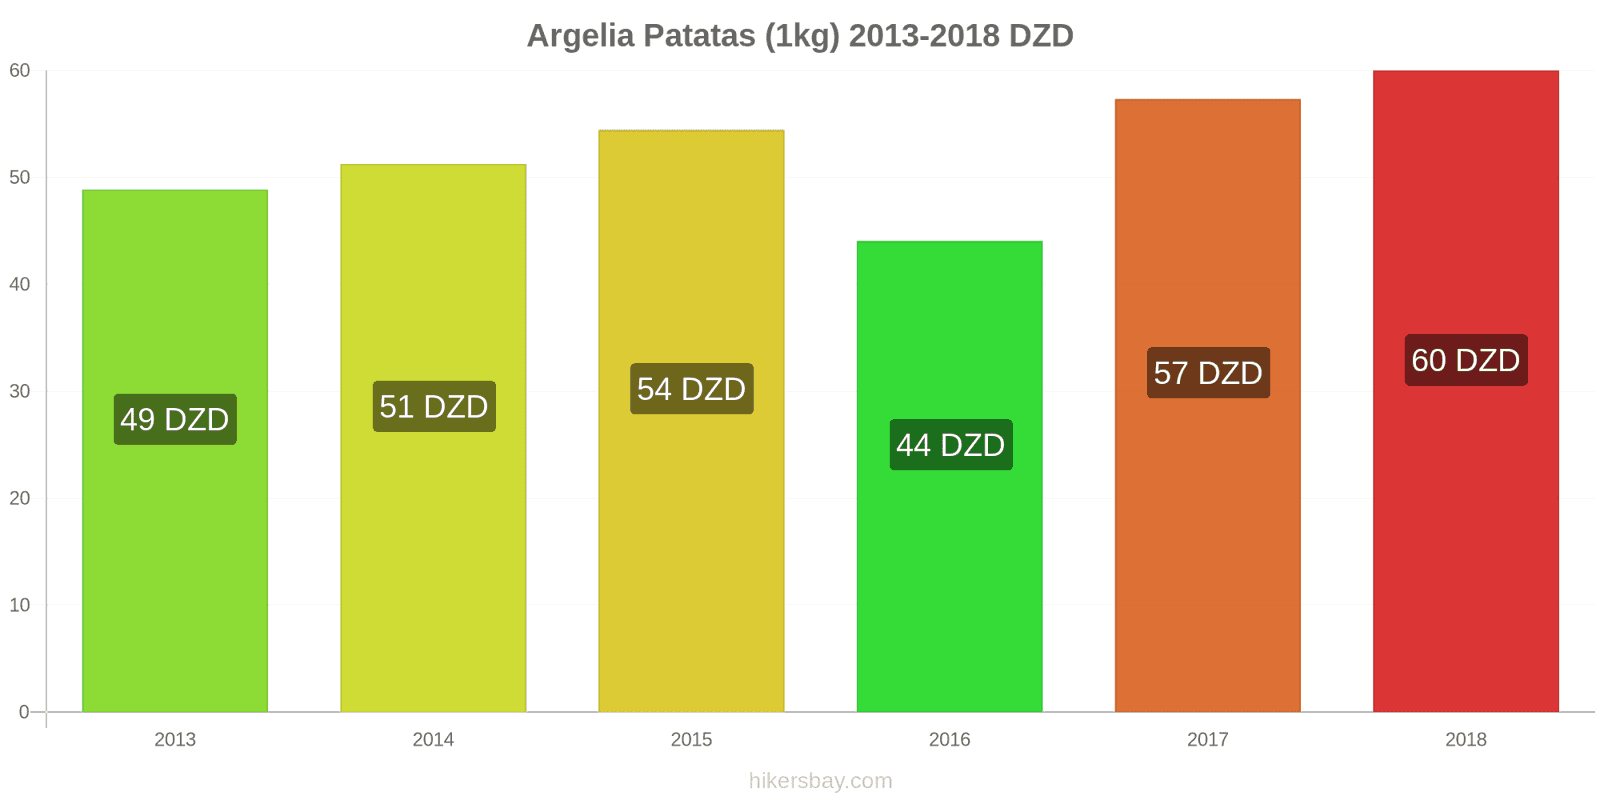 Argelia cambios de precios Patatas (1kg) hikersbay.com